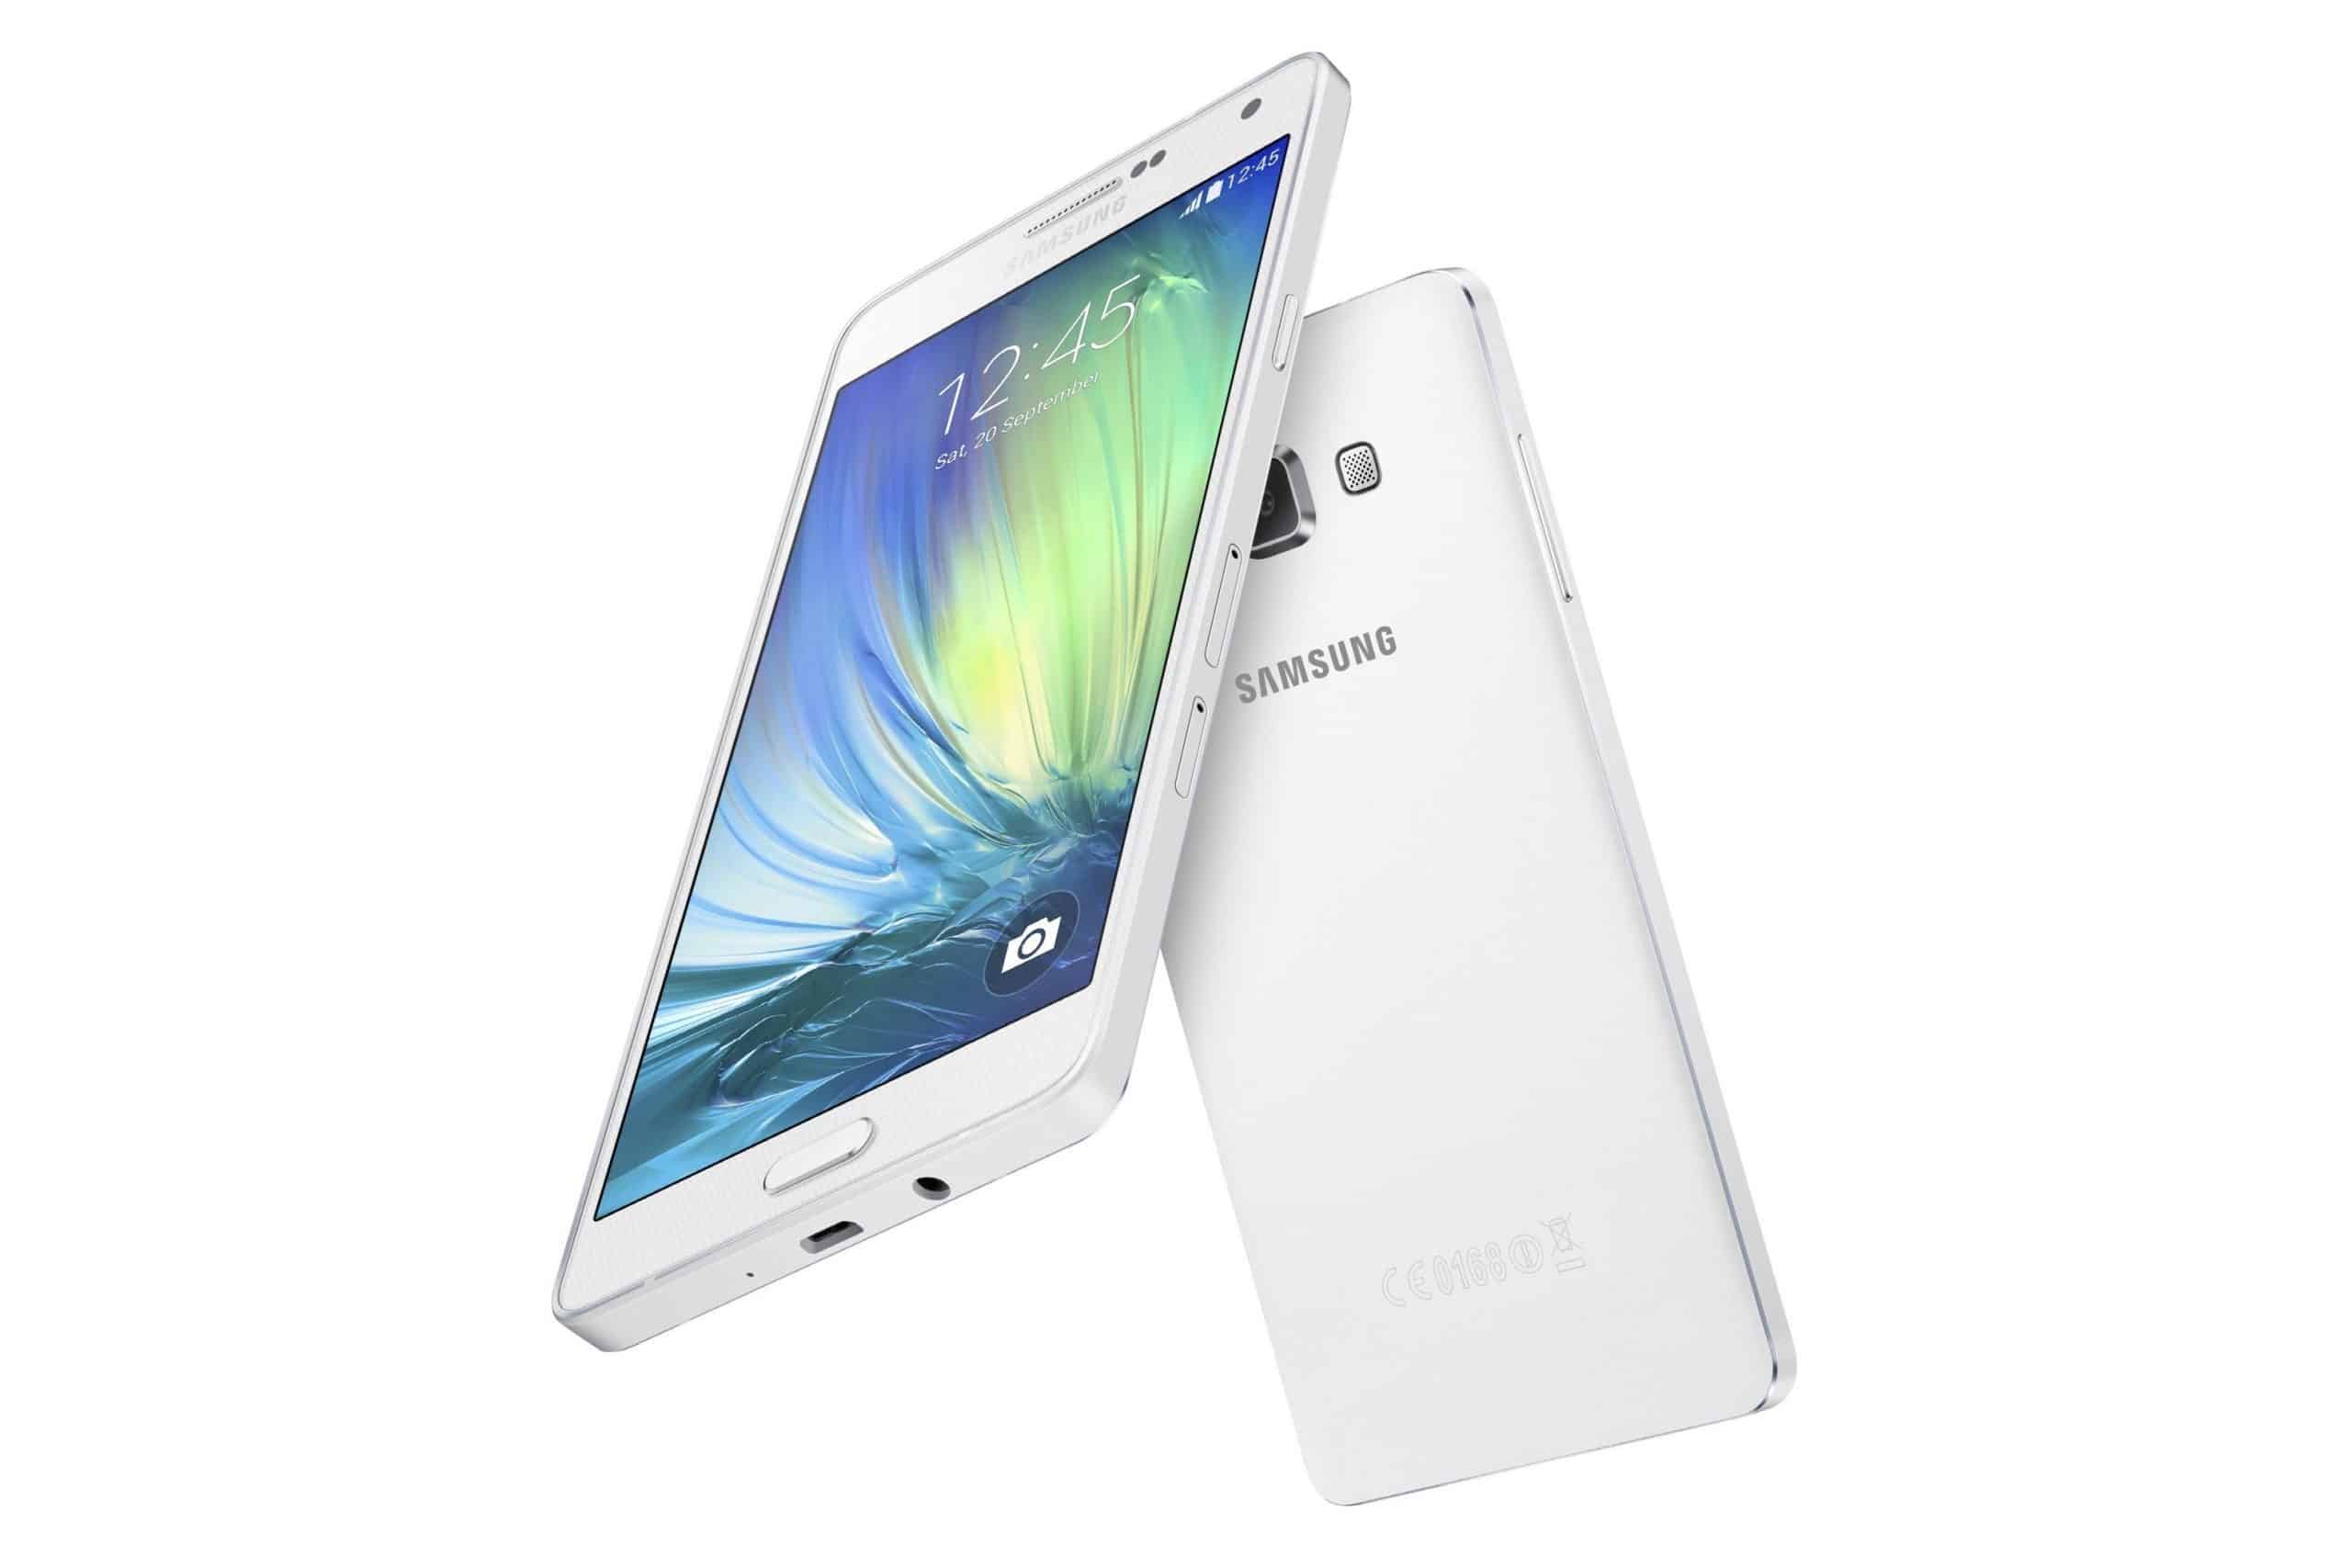 Samsung Introduces Galaxy A7